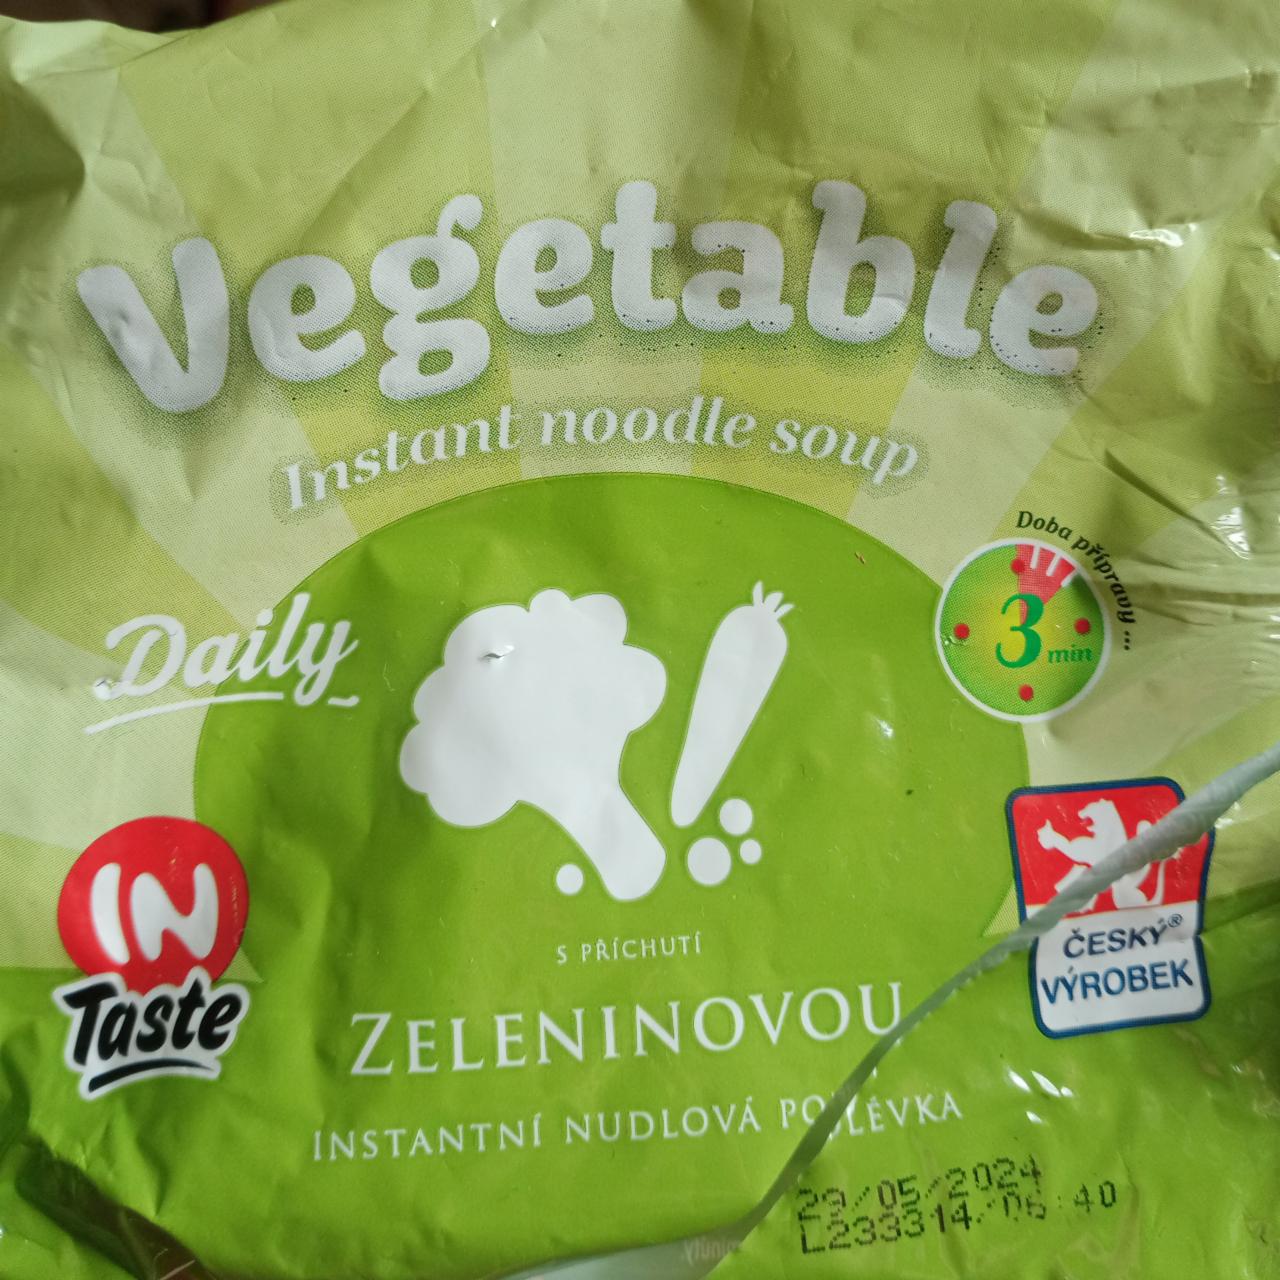 Фото - Vegetable instantní nudlová polevkas příchuti zeleninovou inTaste